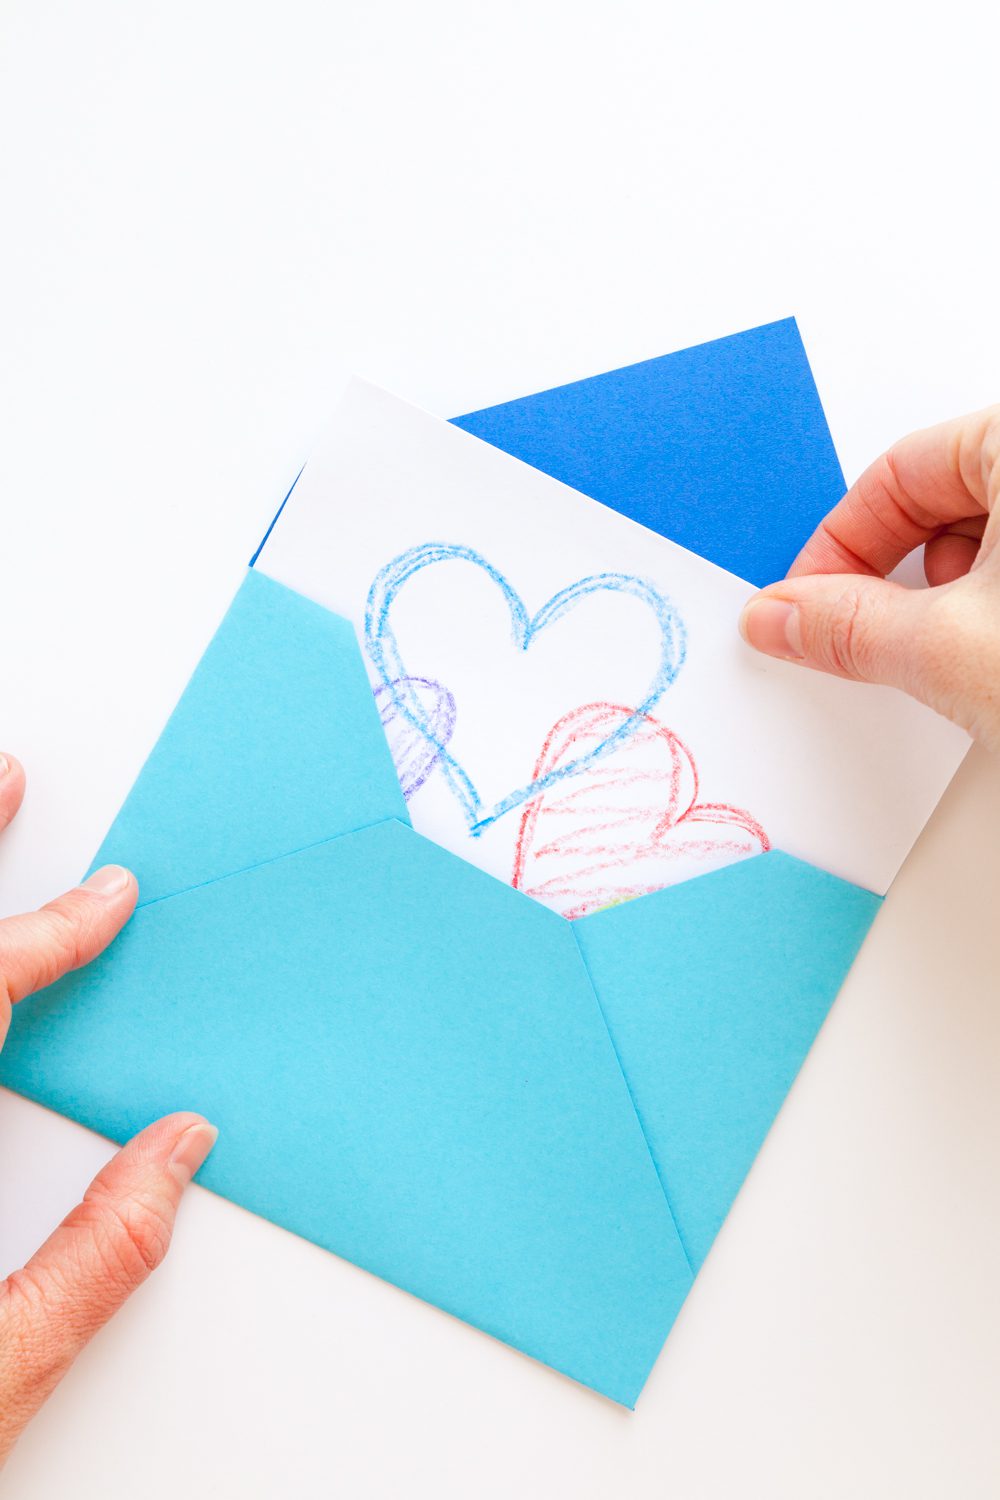 Handmade Envelopes 3 Ways To Nana's